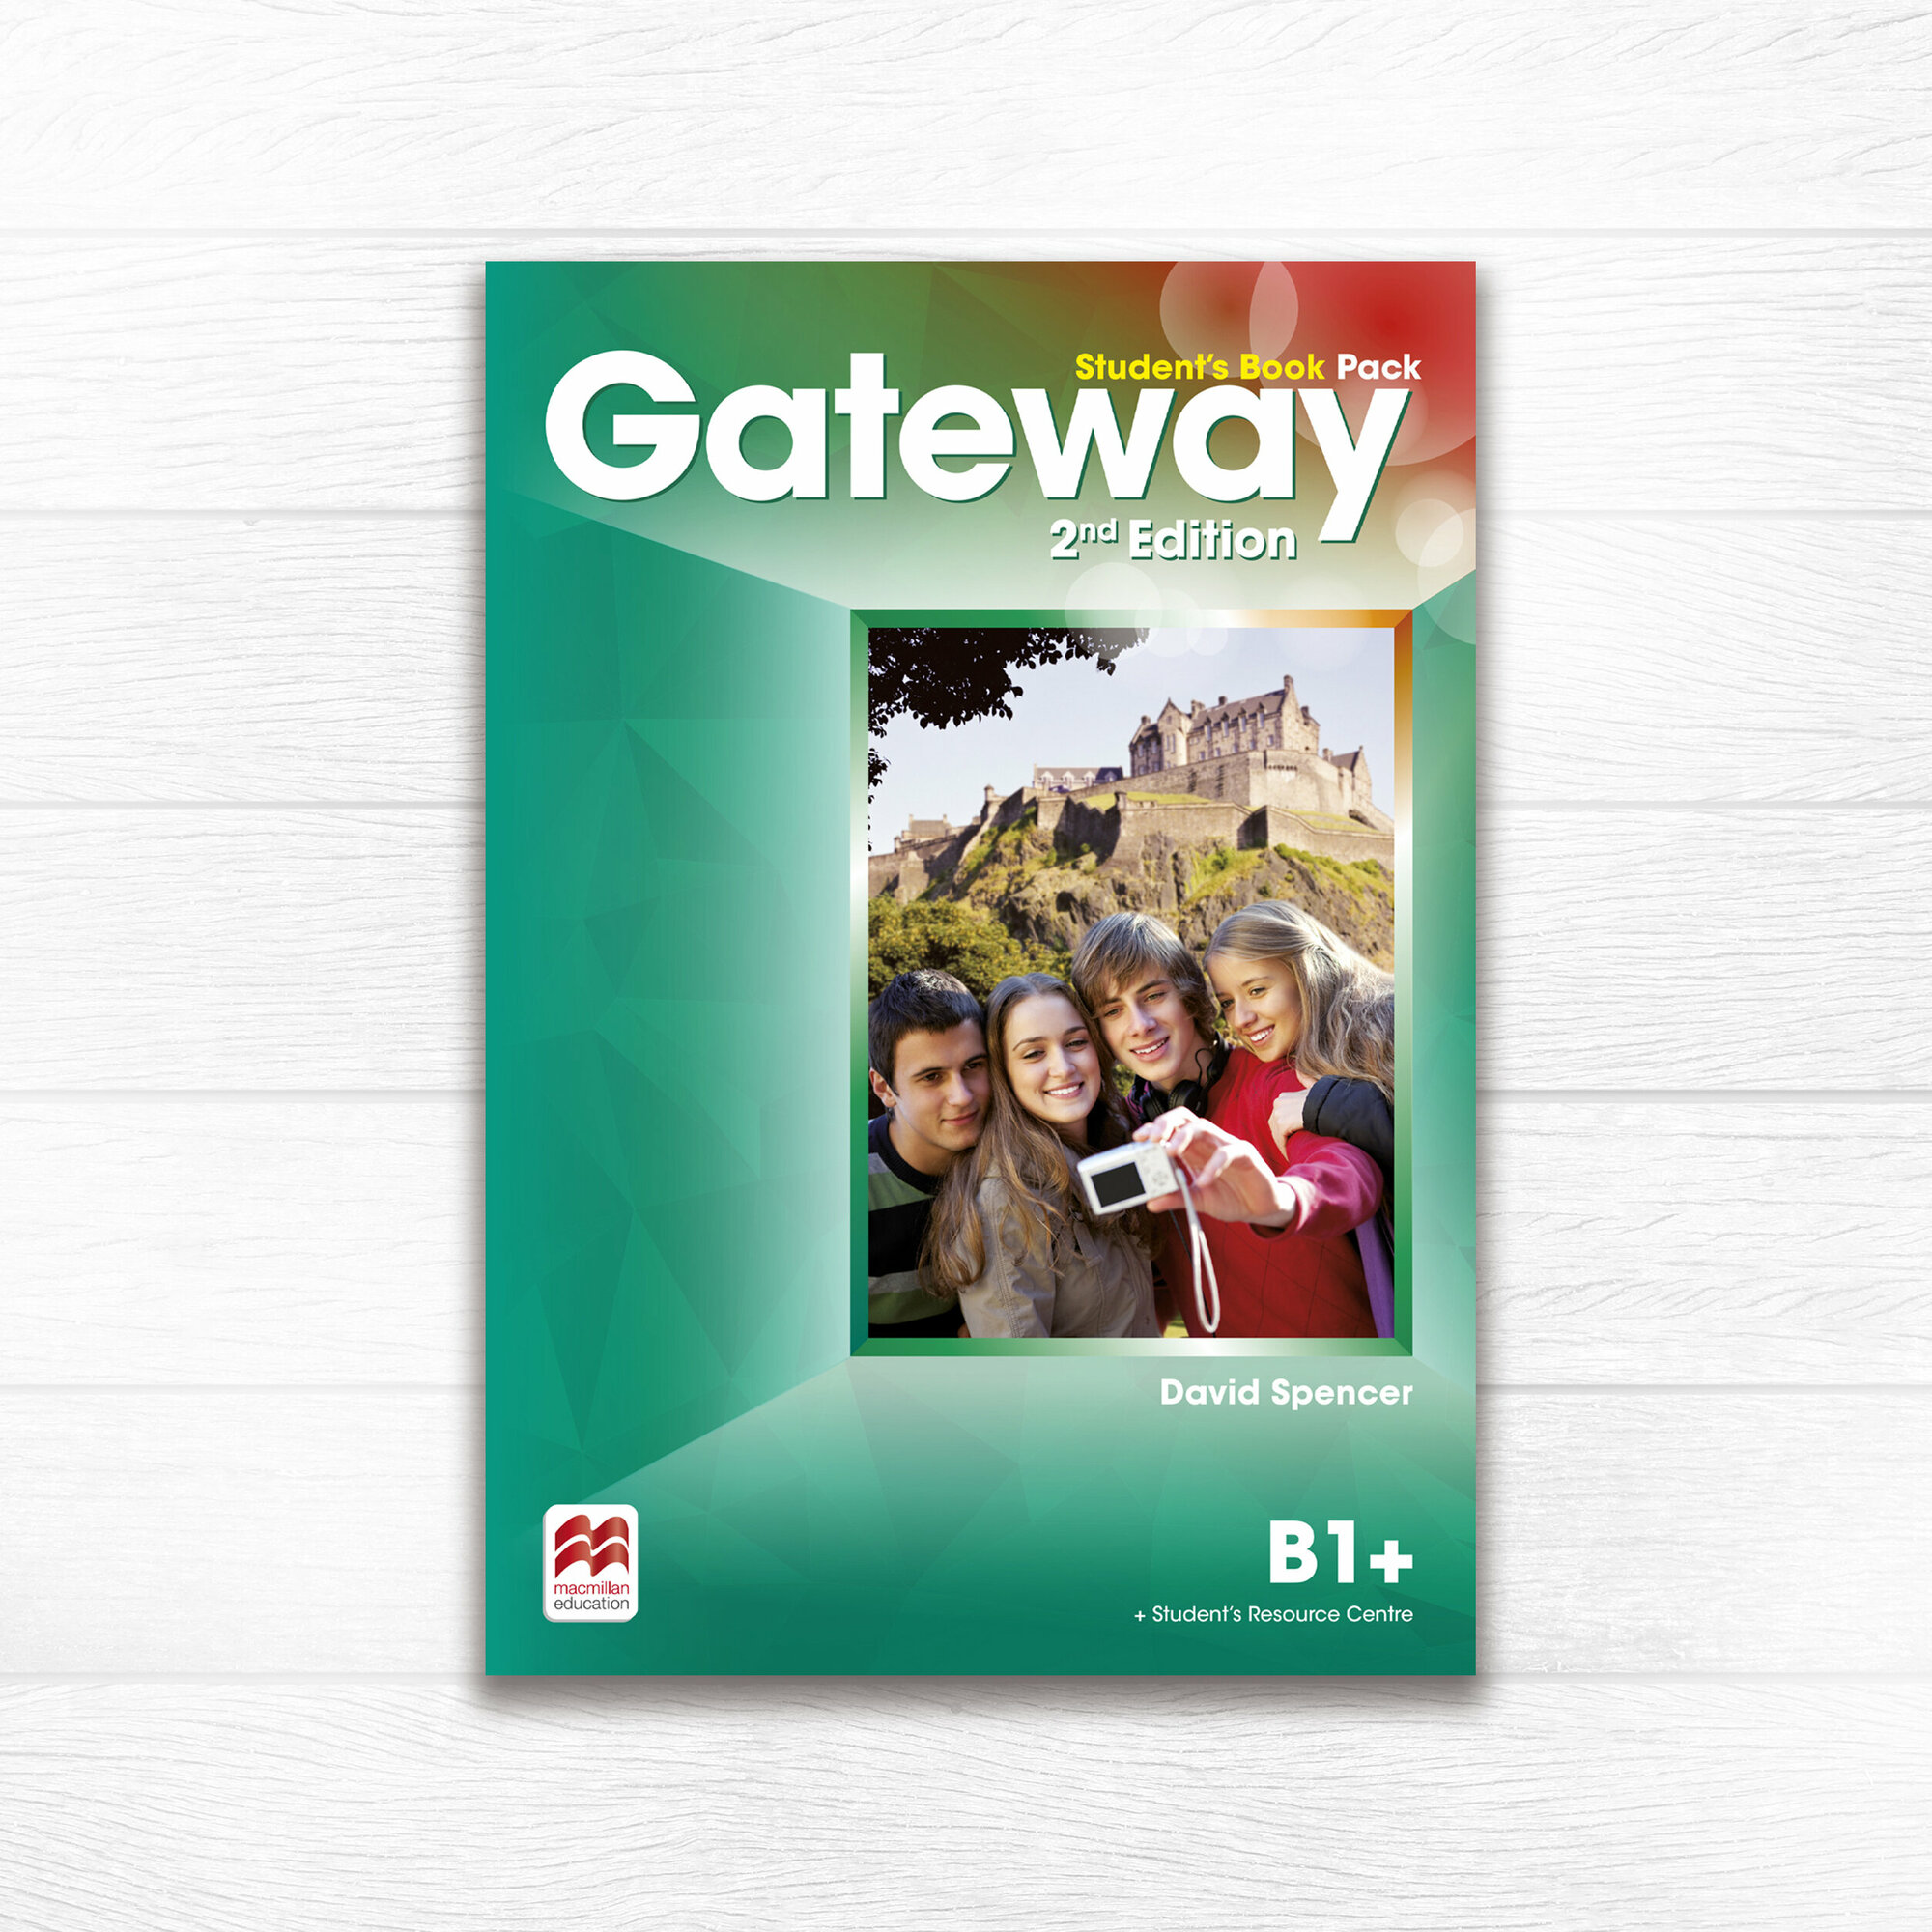 Gateway Second Edition B1+ Student's Book with Online Code, учебник по английскому языку для подростков